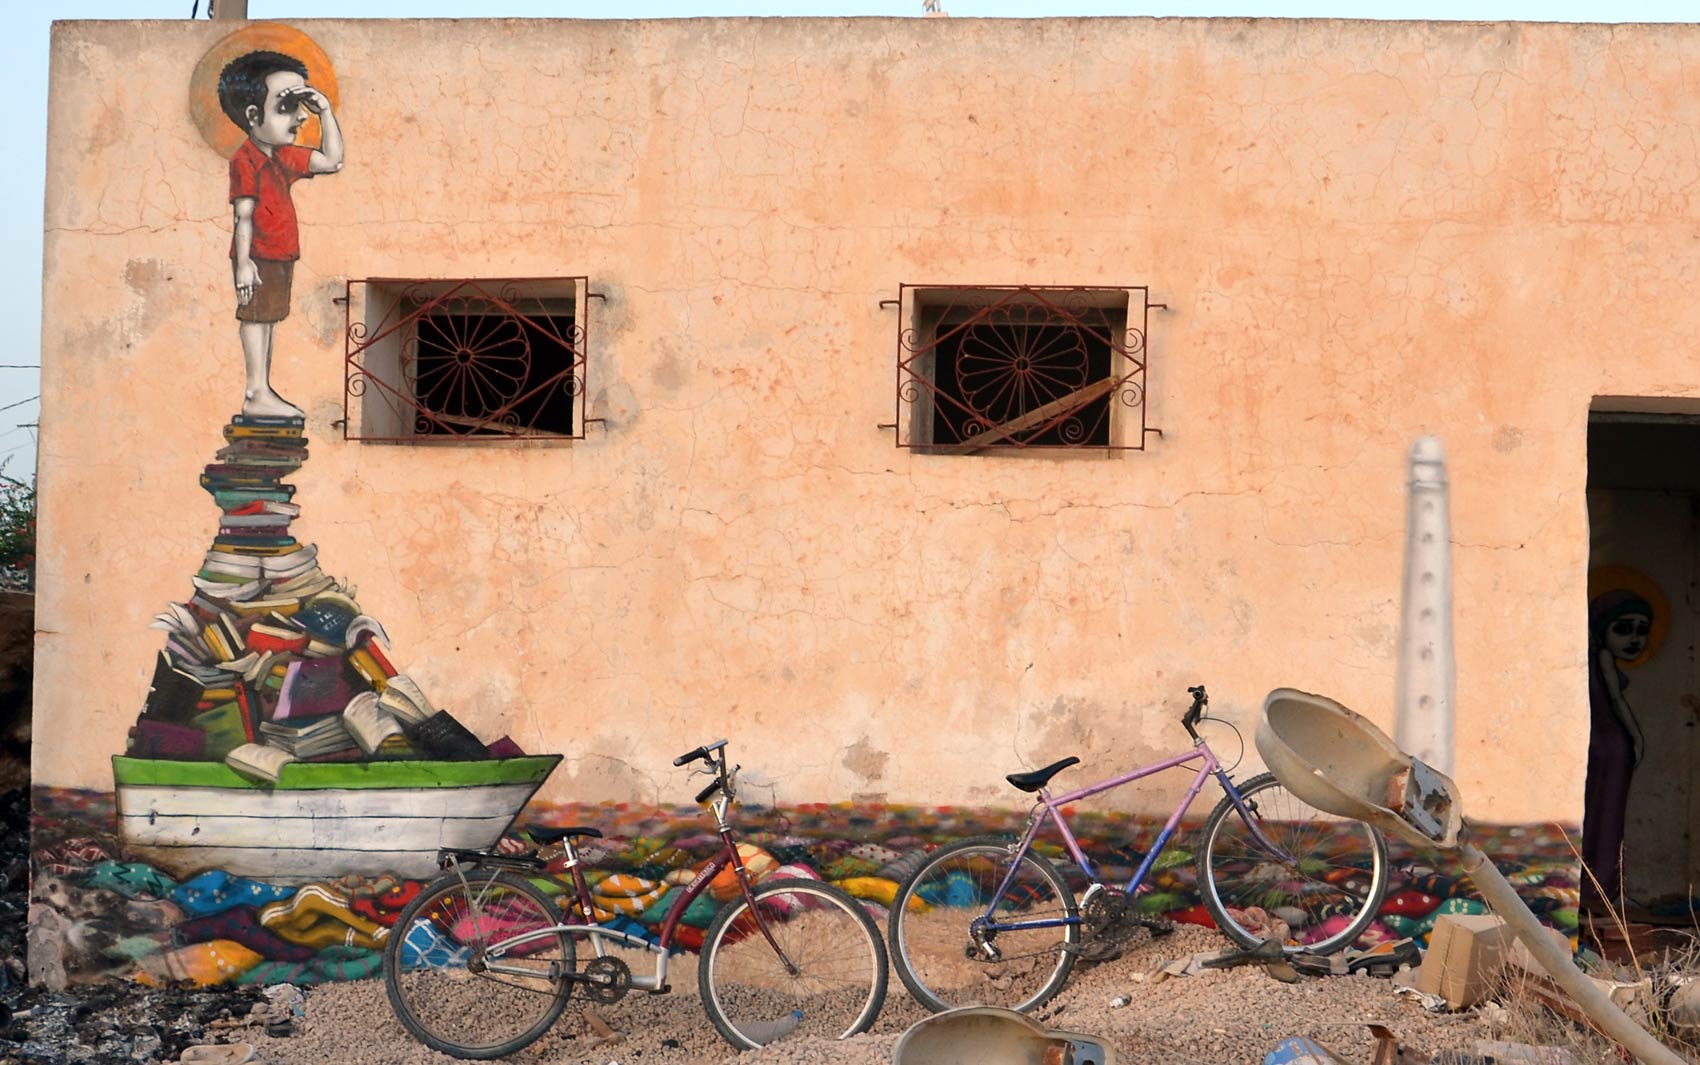 A ilha de Djerba, na Tunísia, está sendo transformada num museu de grafite a céu aberto por mais de 100 artistas de 40 países. Os prédios com a arquitetura característica da região estão sendo coloridos a convite do artista tunisiano Mehdi Ben Cheikh